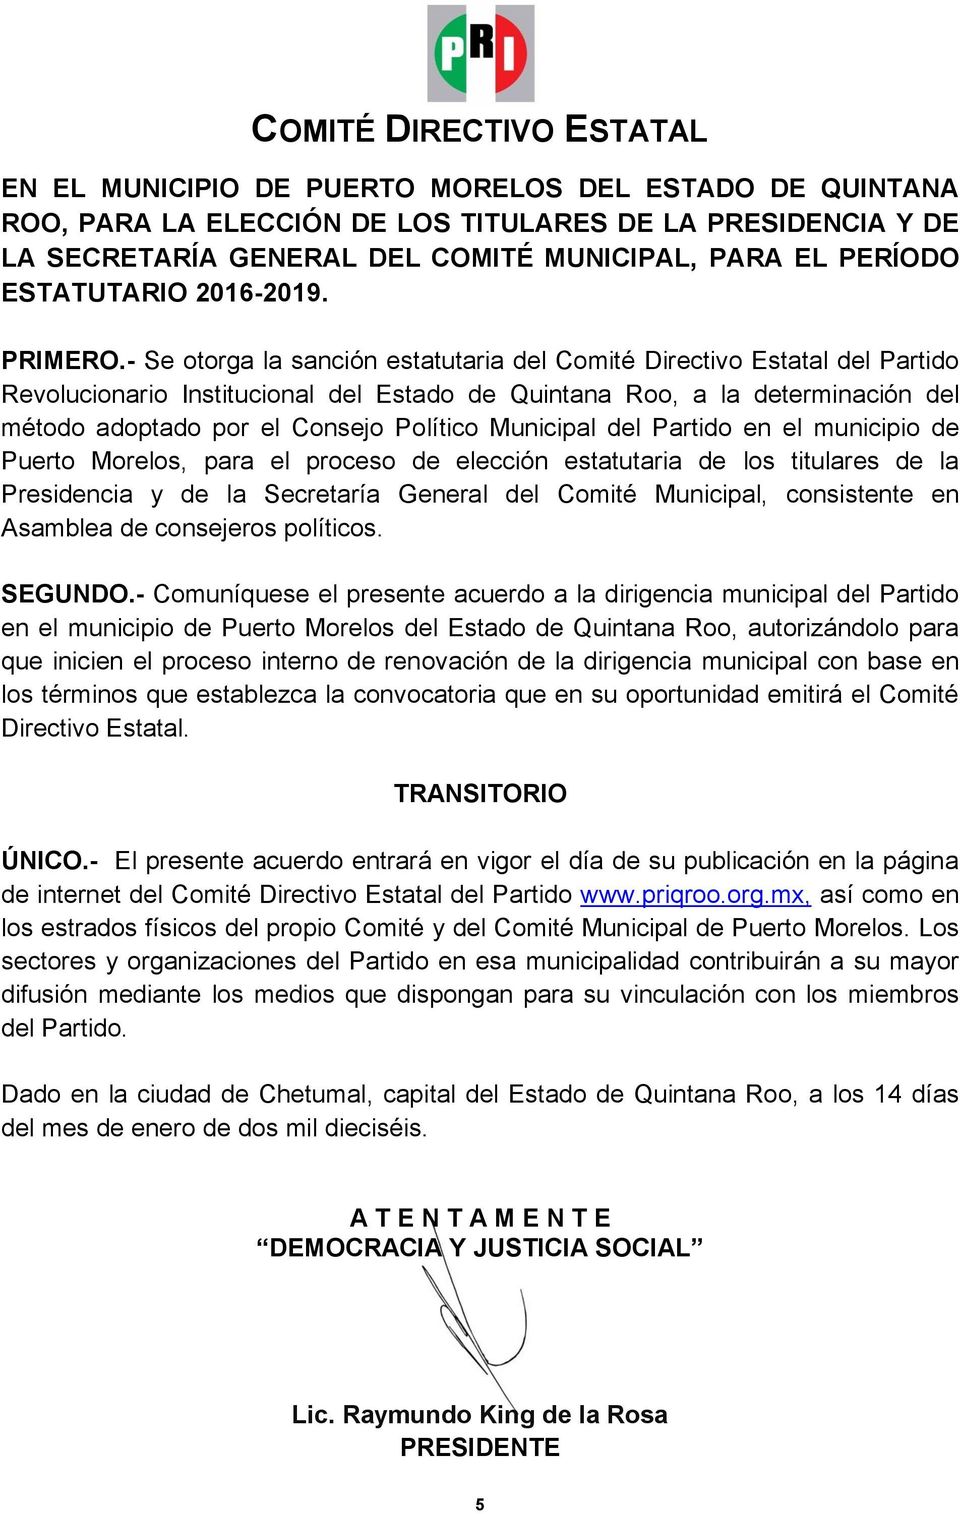 - Se otorga la sanción estatutaria del Comité Directivo Estatal del Partido Revolucionario Institucional del Estado de Quintana Roo, a la determinación del método adoptado por el Consejo Político